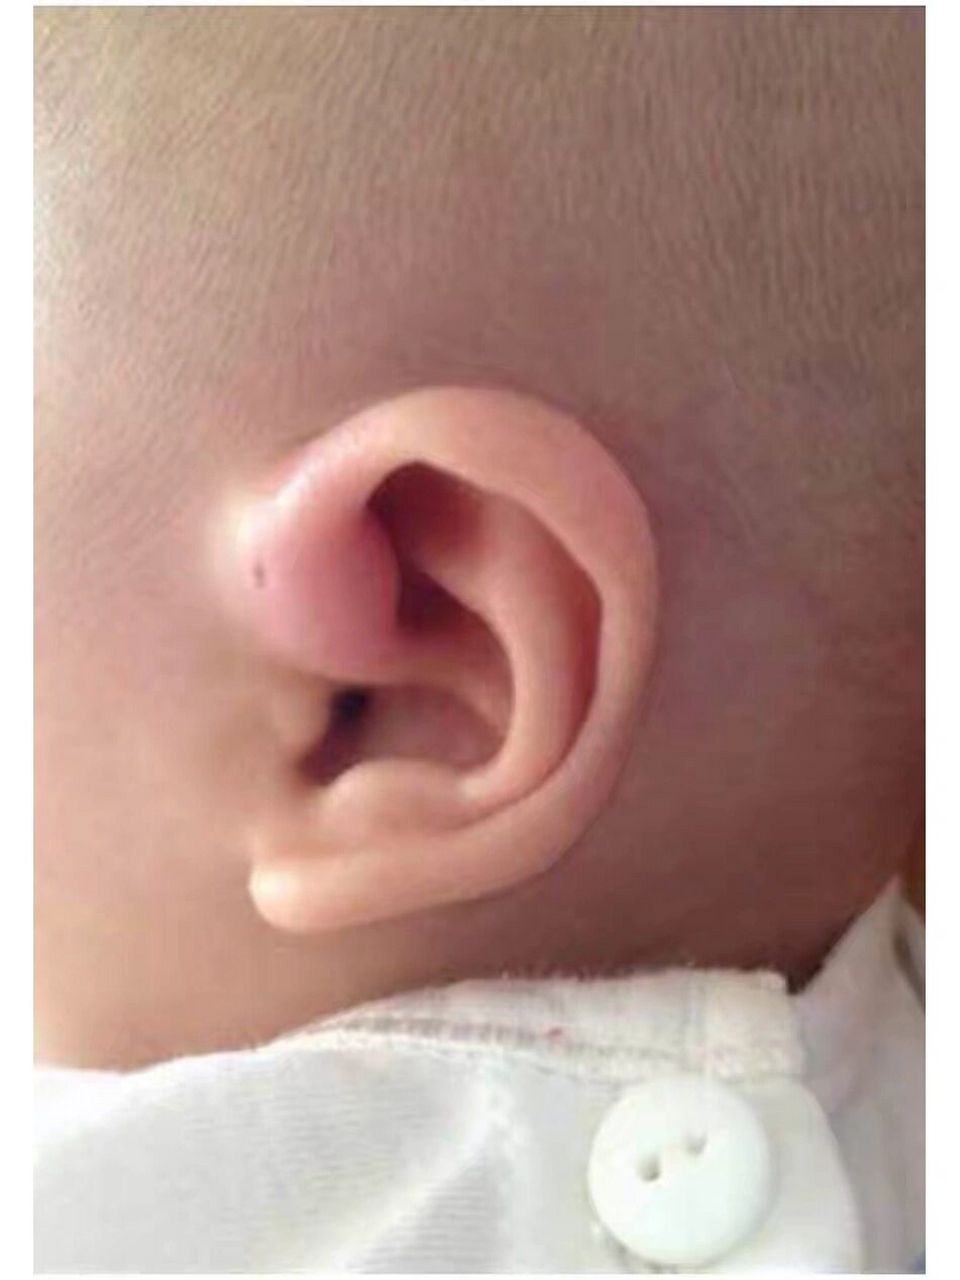 宝宝耳朵上面的小孔叫仓眼先天性耳前瘘管 有的人耳朵上面有一个